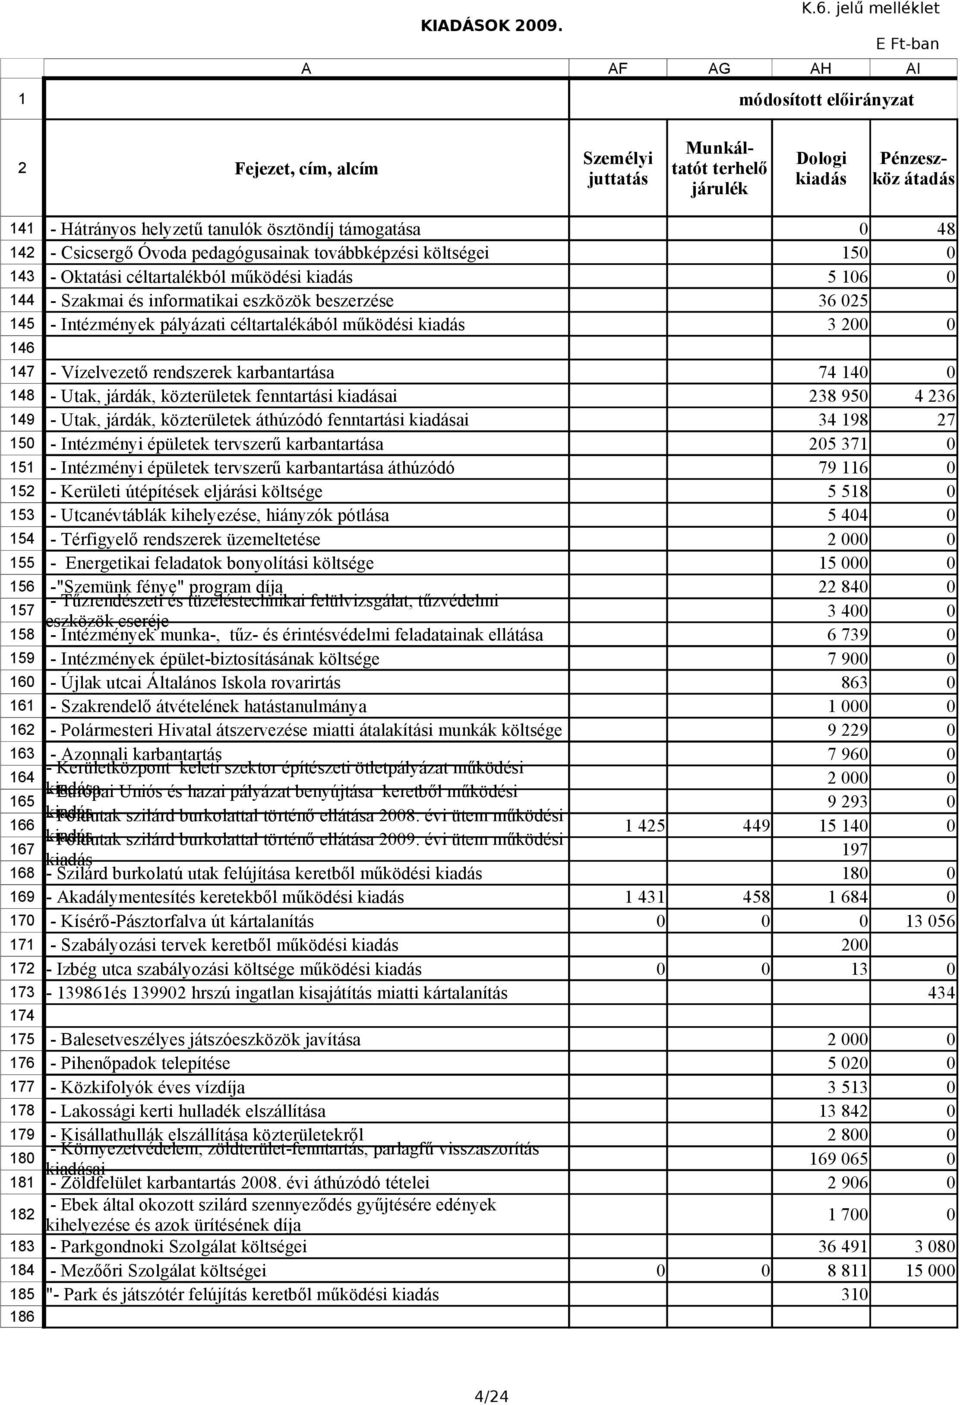 Óvoda pedagógusainak továbbképzési költségei 15 143 - Oktatási céltartalékból működési 5 16 144 145 - Szakmai és informatikai eszközök beszerzése - Intézmények pályázati céltartalékából működési 36 5